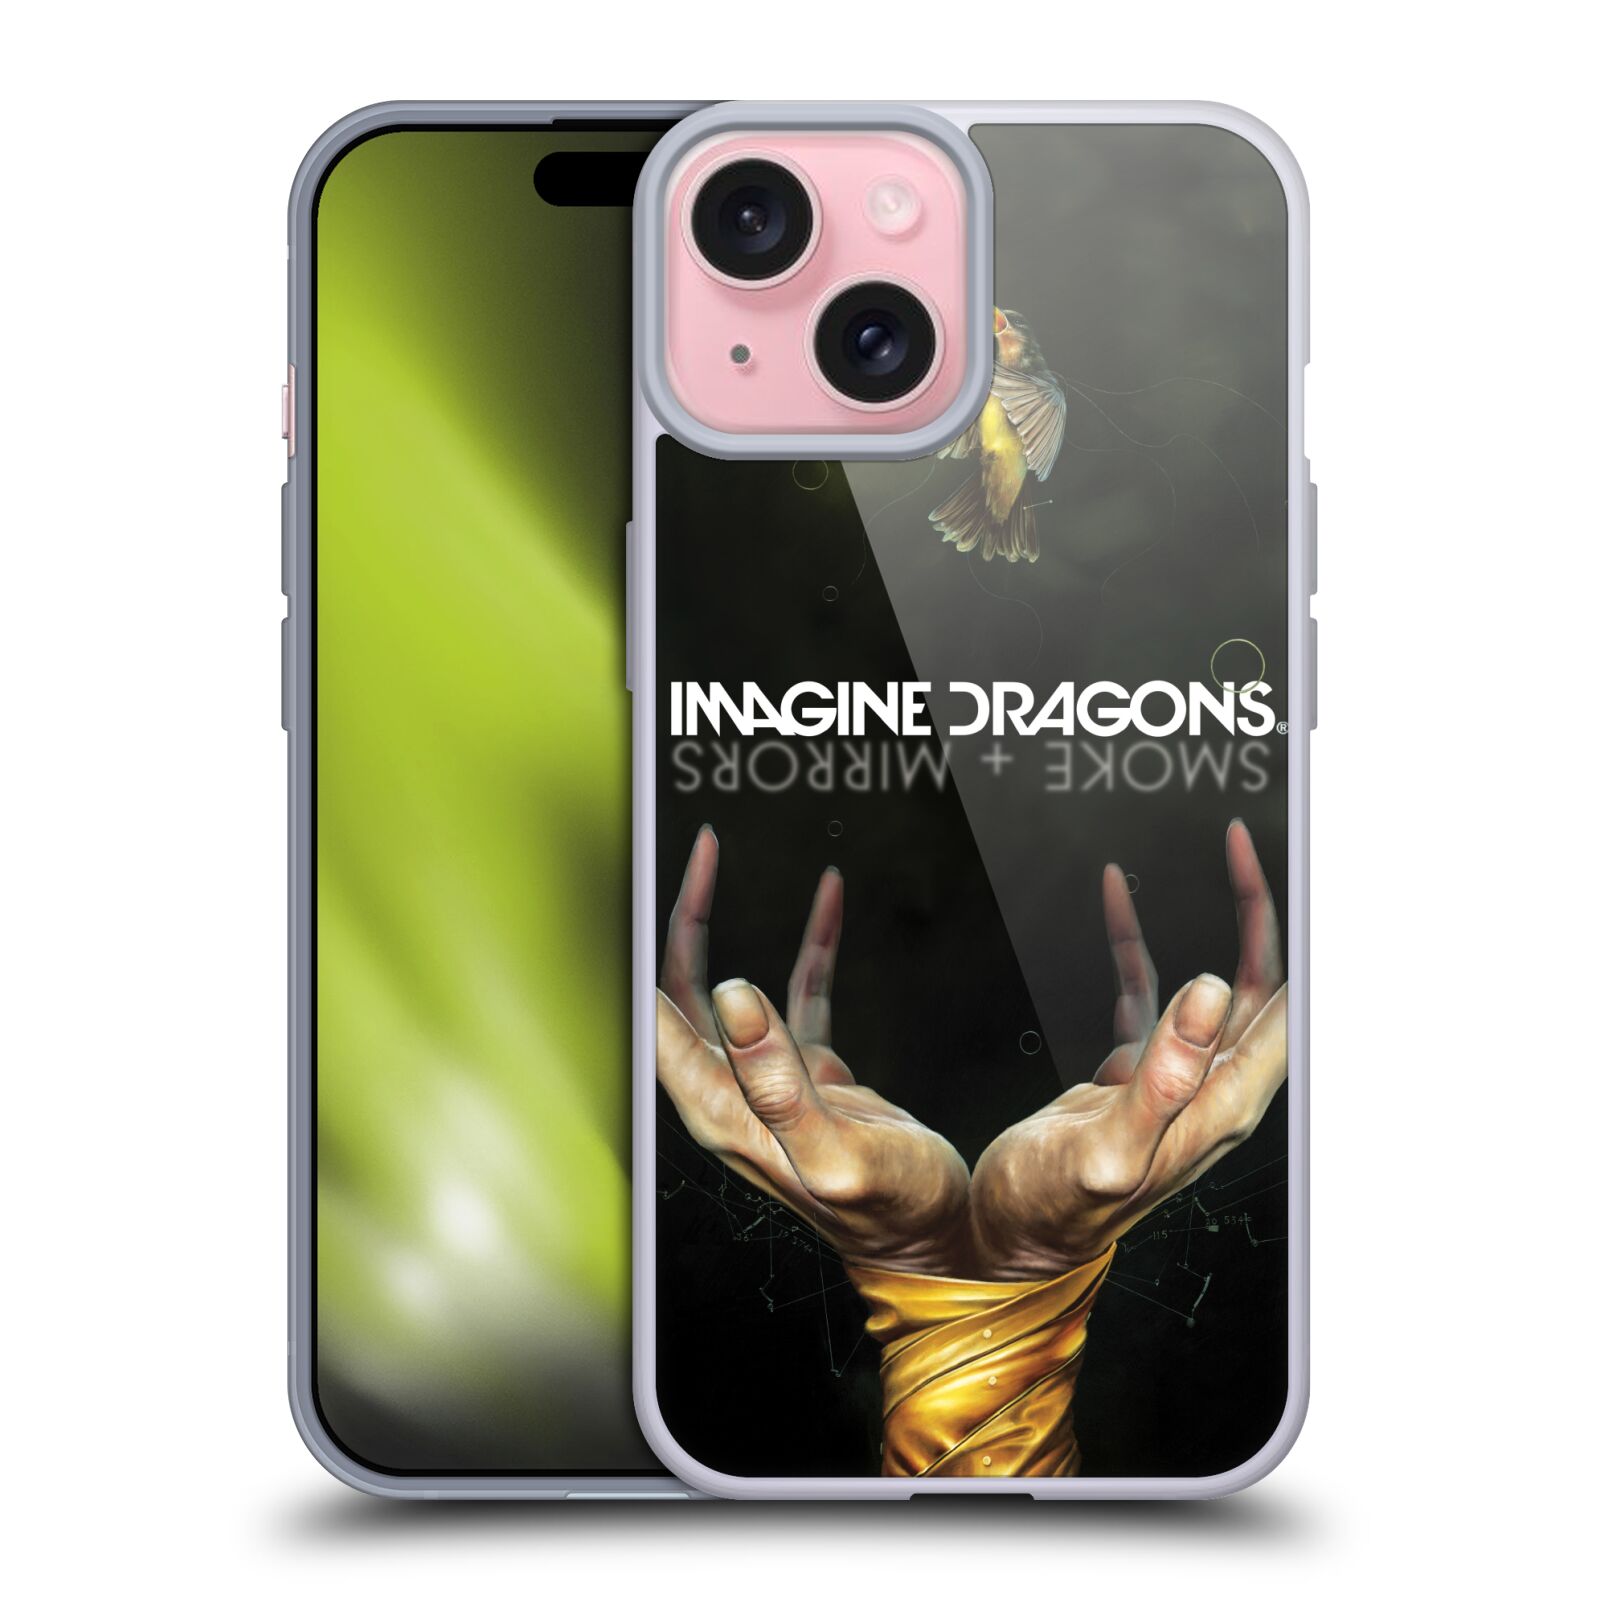 Silikonové lesklé pouzdro na mobil Apple iPhone 15 - Imagine Dragons - Smoke And Mirrors (Silikonový lesklý kryt, obal, pouzdro na mobilní telefon Apple iPhone 15 s licencovaným motivem Imagine Dragons - Smoke And Mirrors)